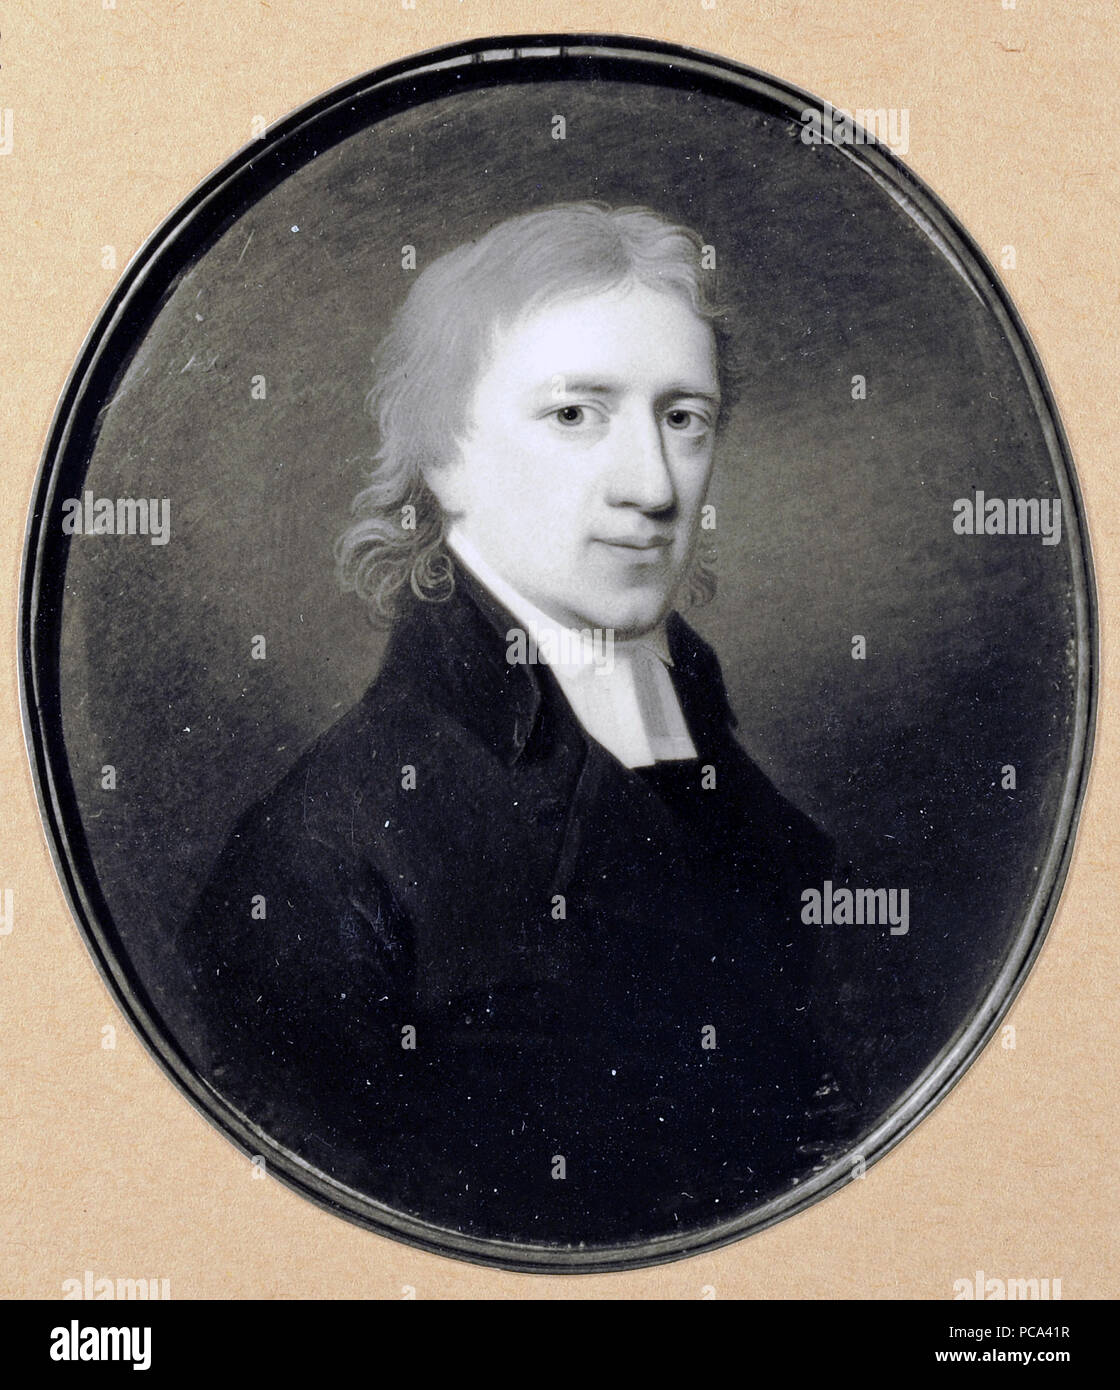 59 Magnus af Lehnberg (1758-1808), biskop (Johan Erik Bolinder) - Nationalmuseum - 24082 Stock Photo